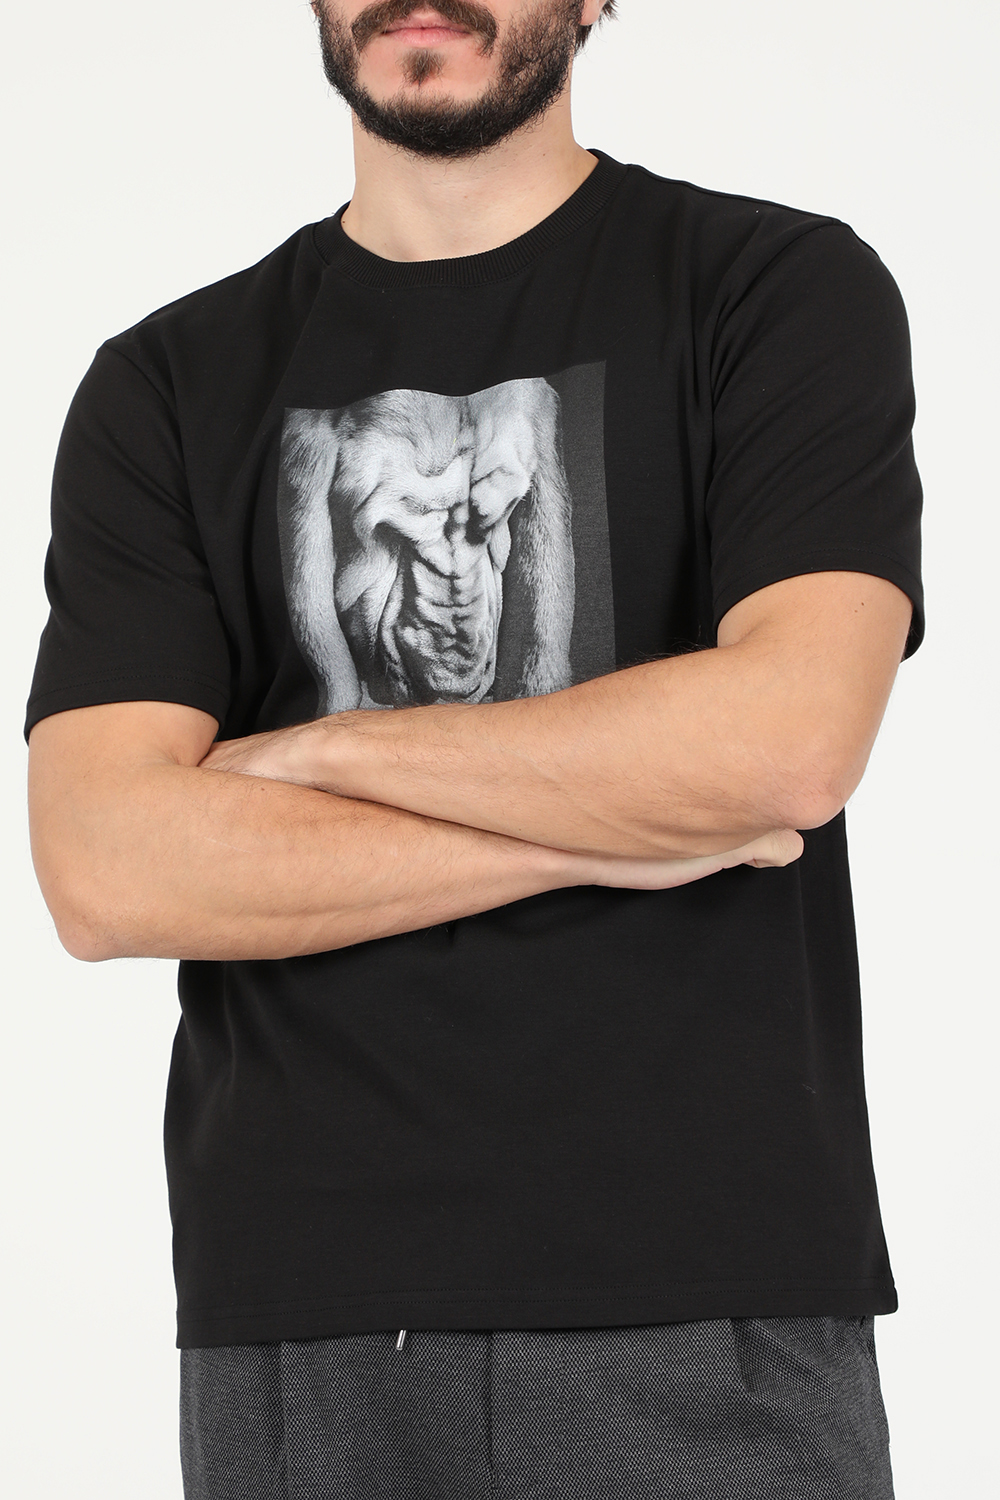 Ανδρικά/Ρούχα/Μπλούζες/Κοντομάνικες BOSS - Ανδρικό t-shirt BOSS Tanimal μαύρο